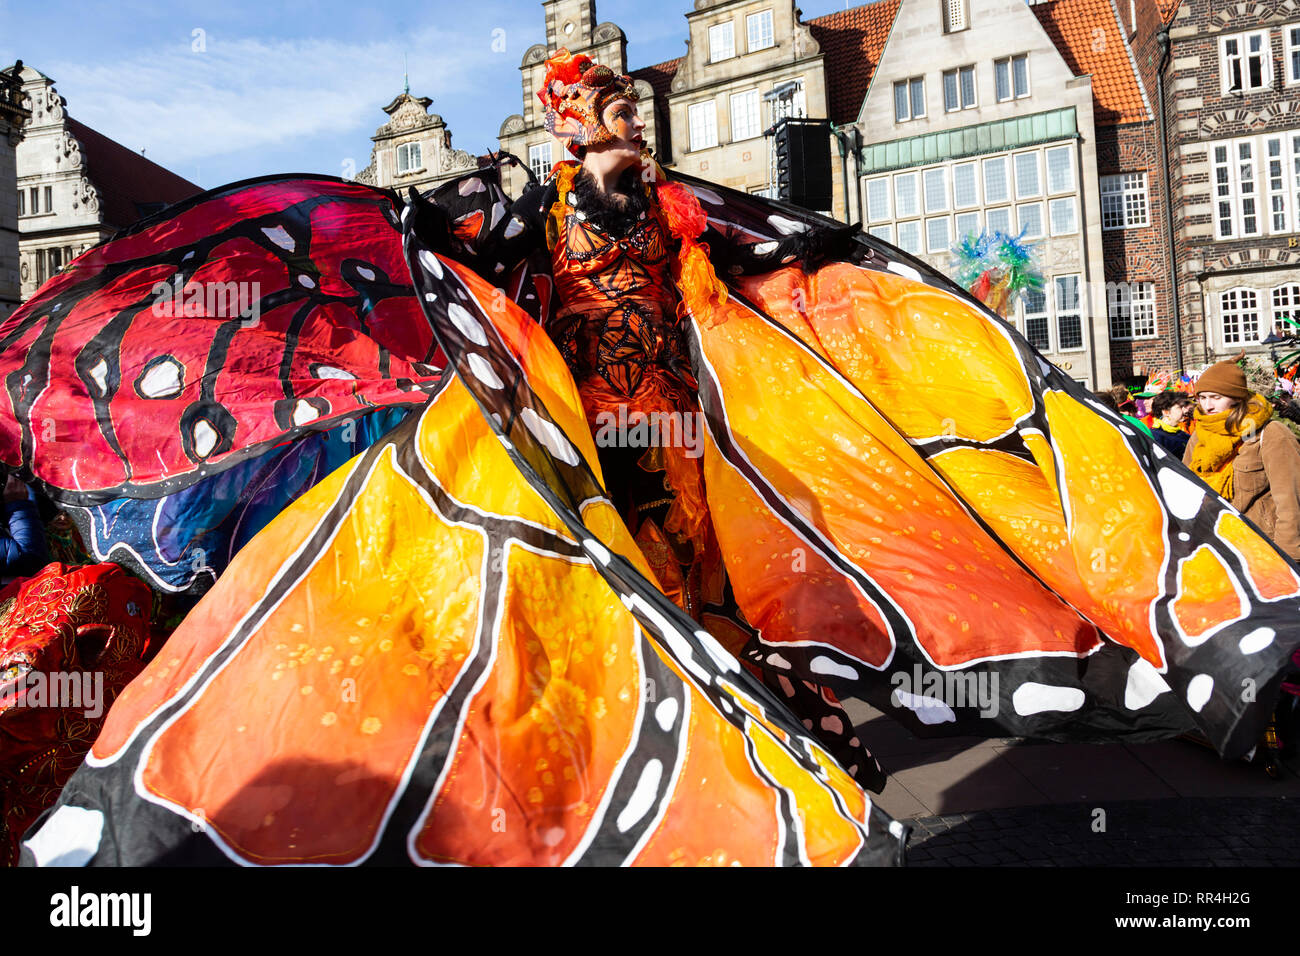 Stelzenläufer von Stelzen-Art. Samba Karneval in Bremen, Deutschland Stockfoto